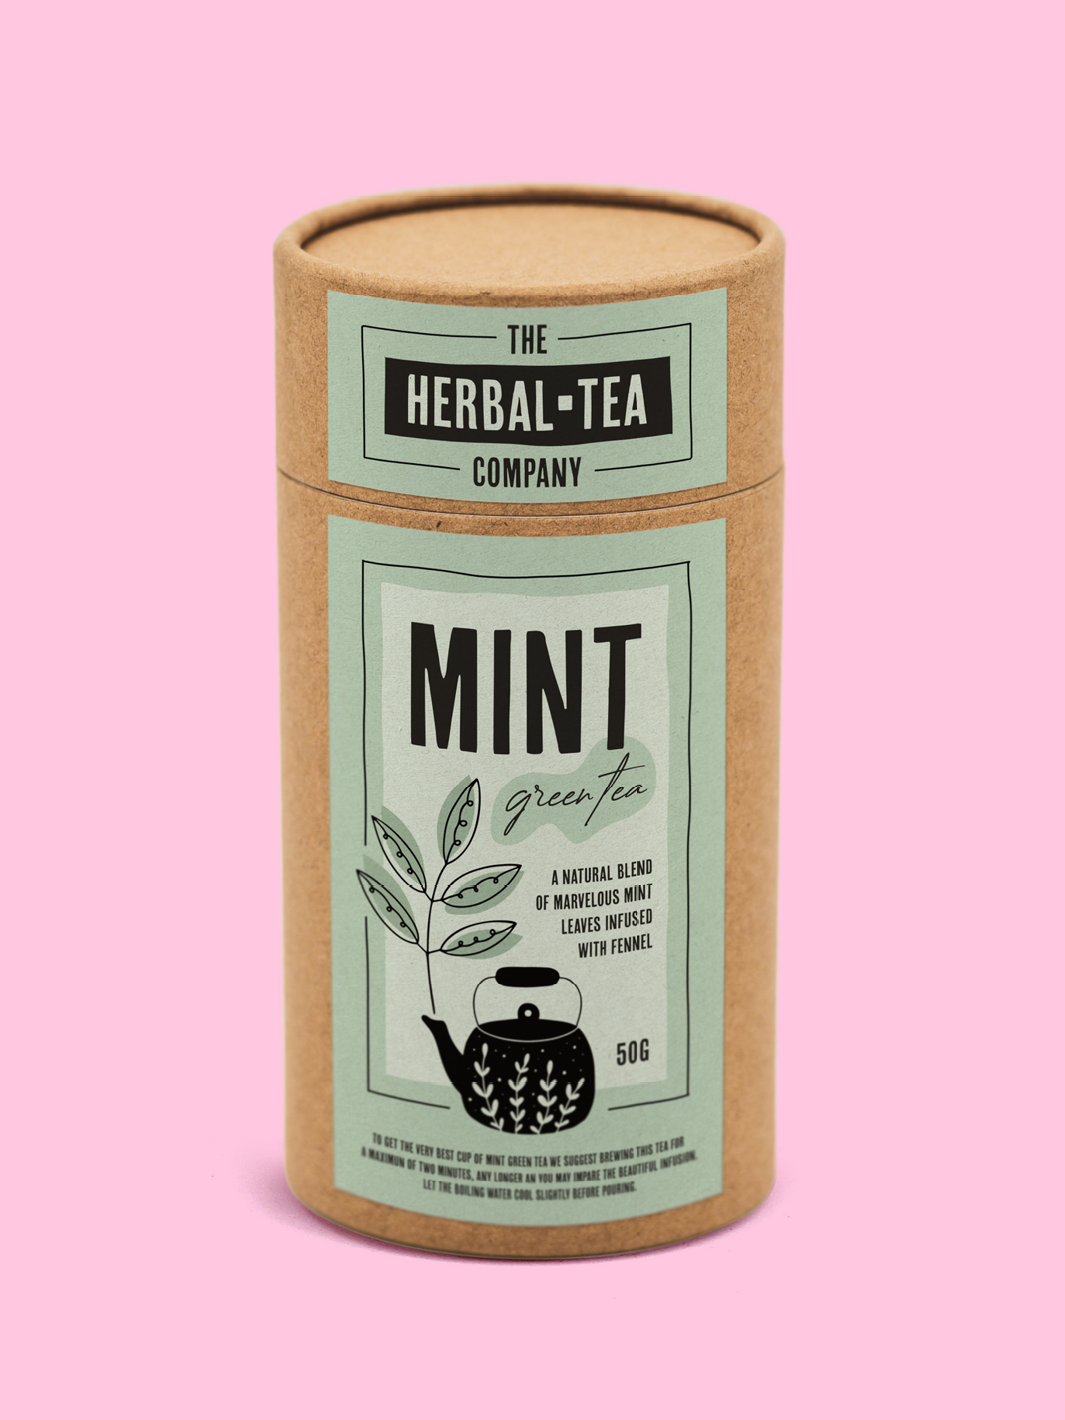 Una imagen de un envase de tubo de cartón con una etiqueta de té de hierbas sobre un fondo rosado